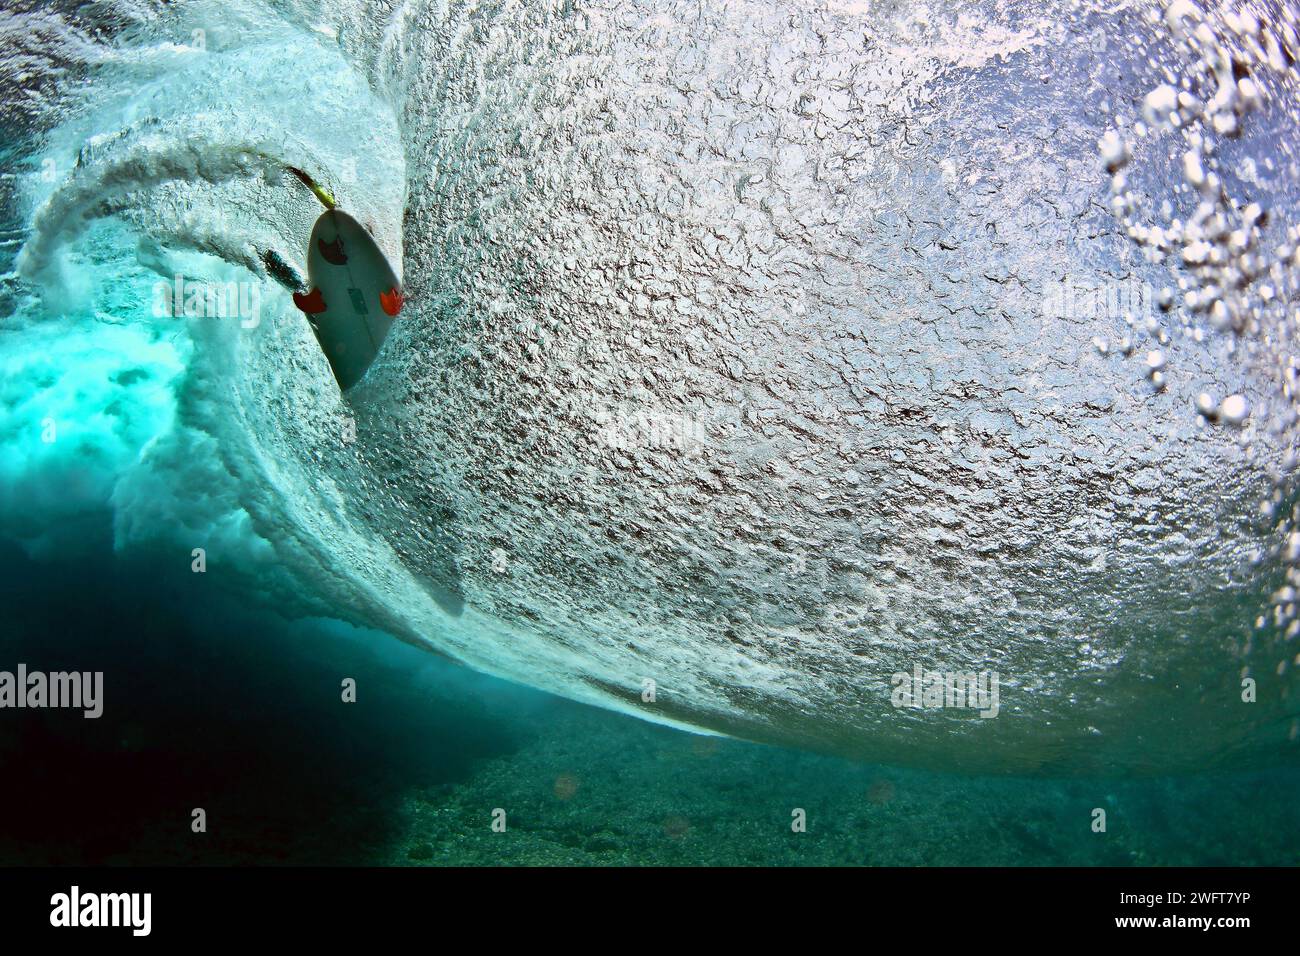 Polynésie française, Tahiti : site de surf à Teahupo'o : homme nageant sous l'eau, sous la vague. Teahupo'o est prévu pour accueillir la compétition de surf f Banque D'Images